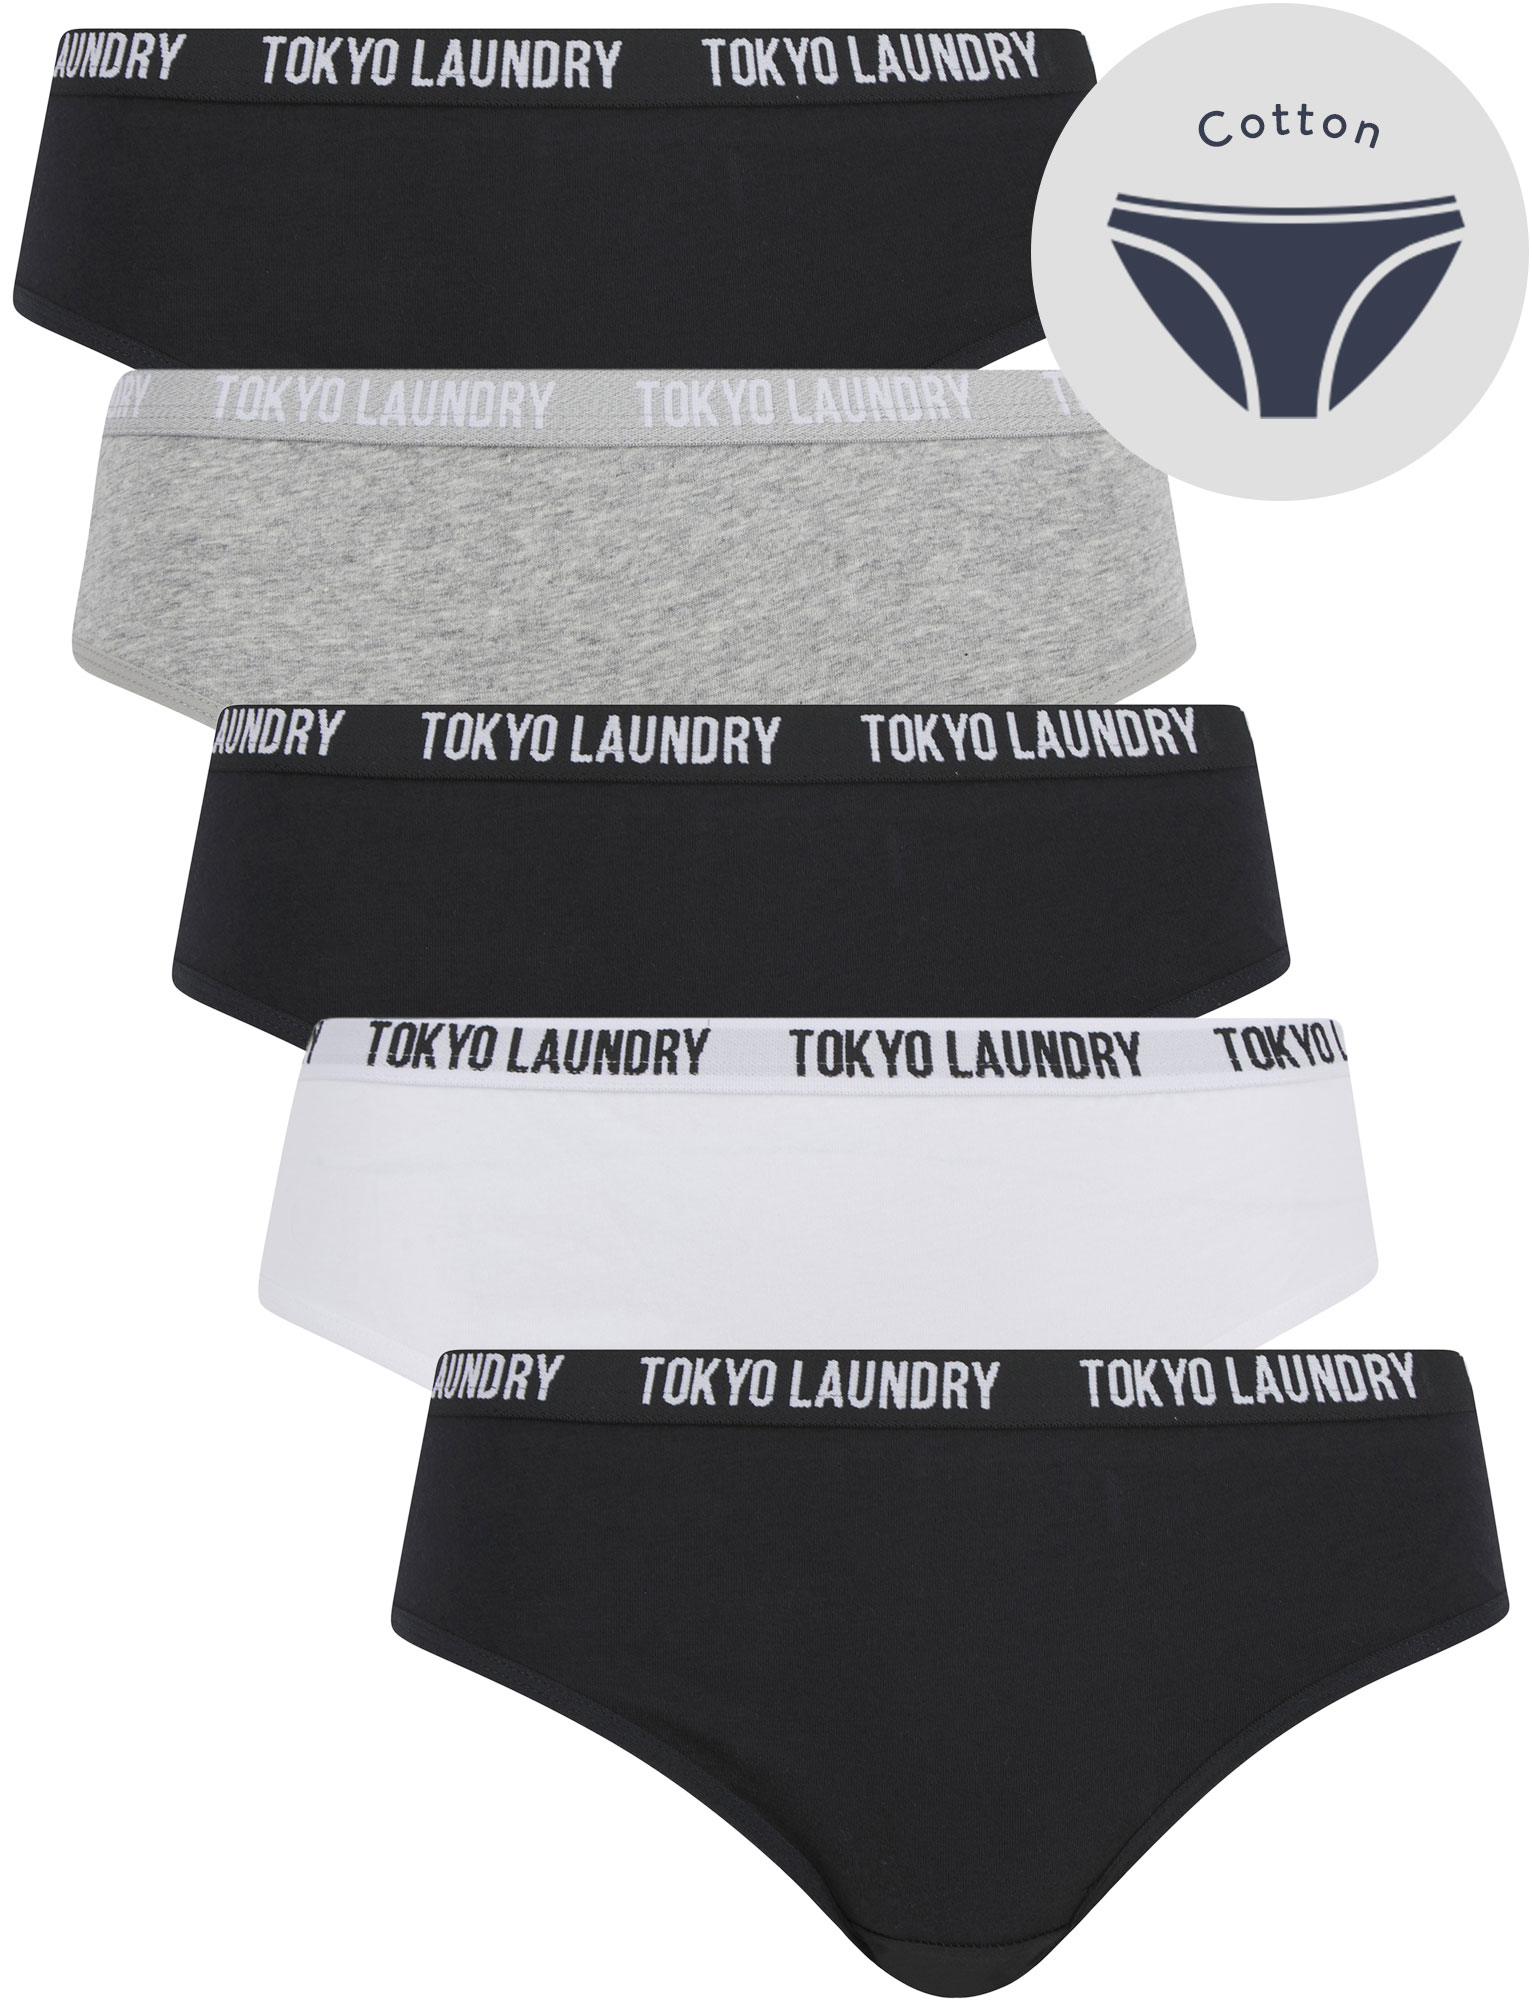 Tokyo Laundry Women's Underwear 5 Pack Briefs Knickers Pants